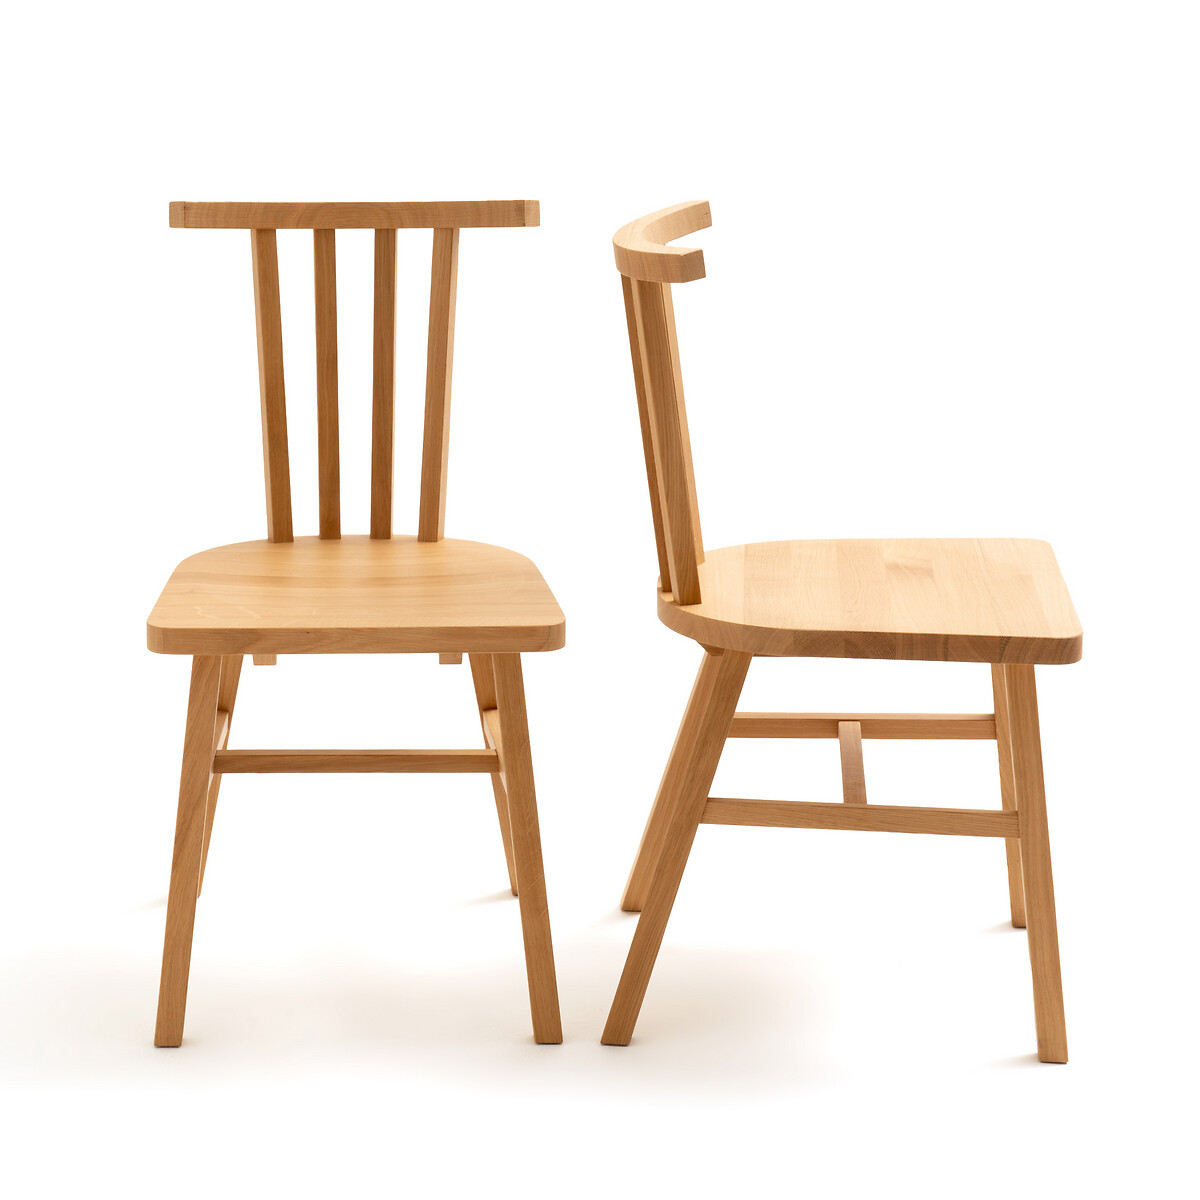 Комплект из 2 стульев с LaRedoute Решетчатой спинкой из массива дуба Ivy единый размер каштановый - фото 2